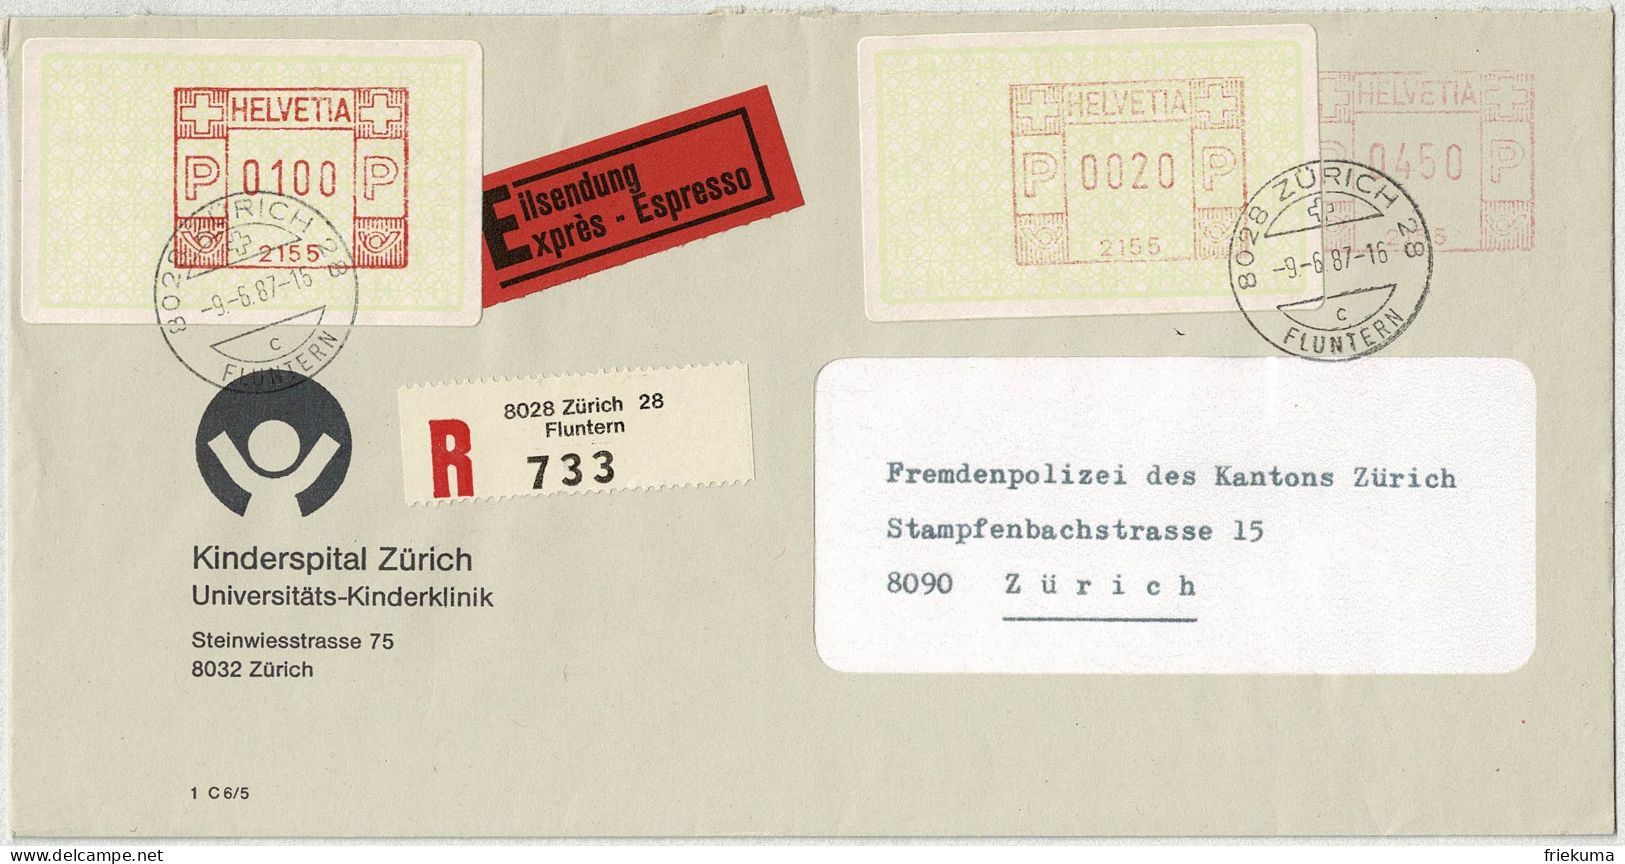 Schweiz 1987, Brief Eilsendung Einschreiben Kinderspital Zürich - Frankiermaschinen (FraMA)